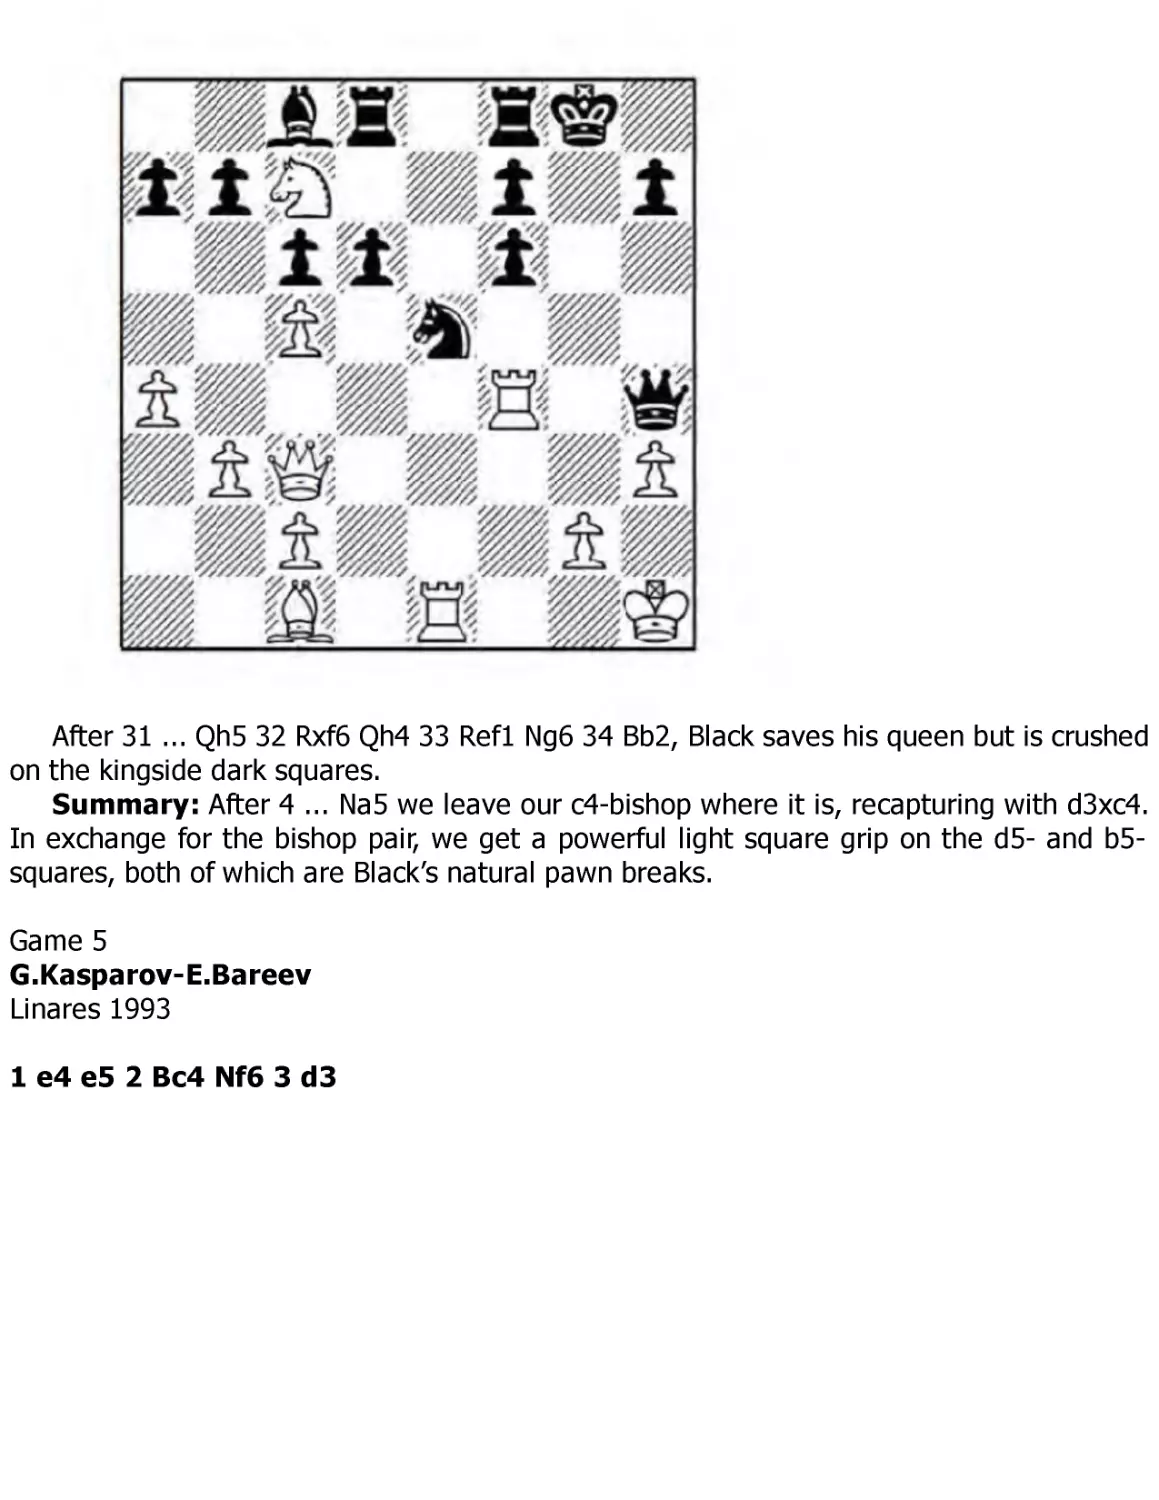 ﻿Kasparov.G-Bareev.E, Linares 199